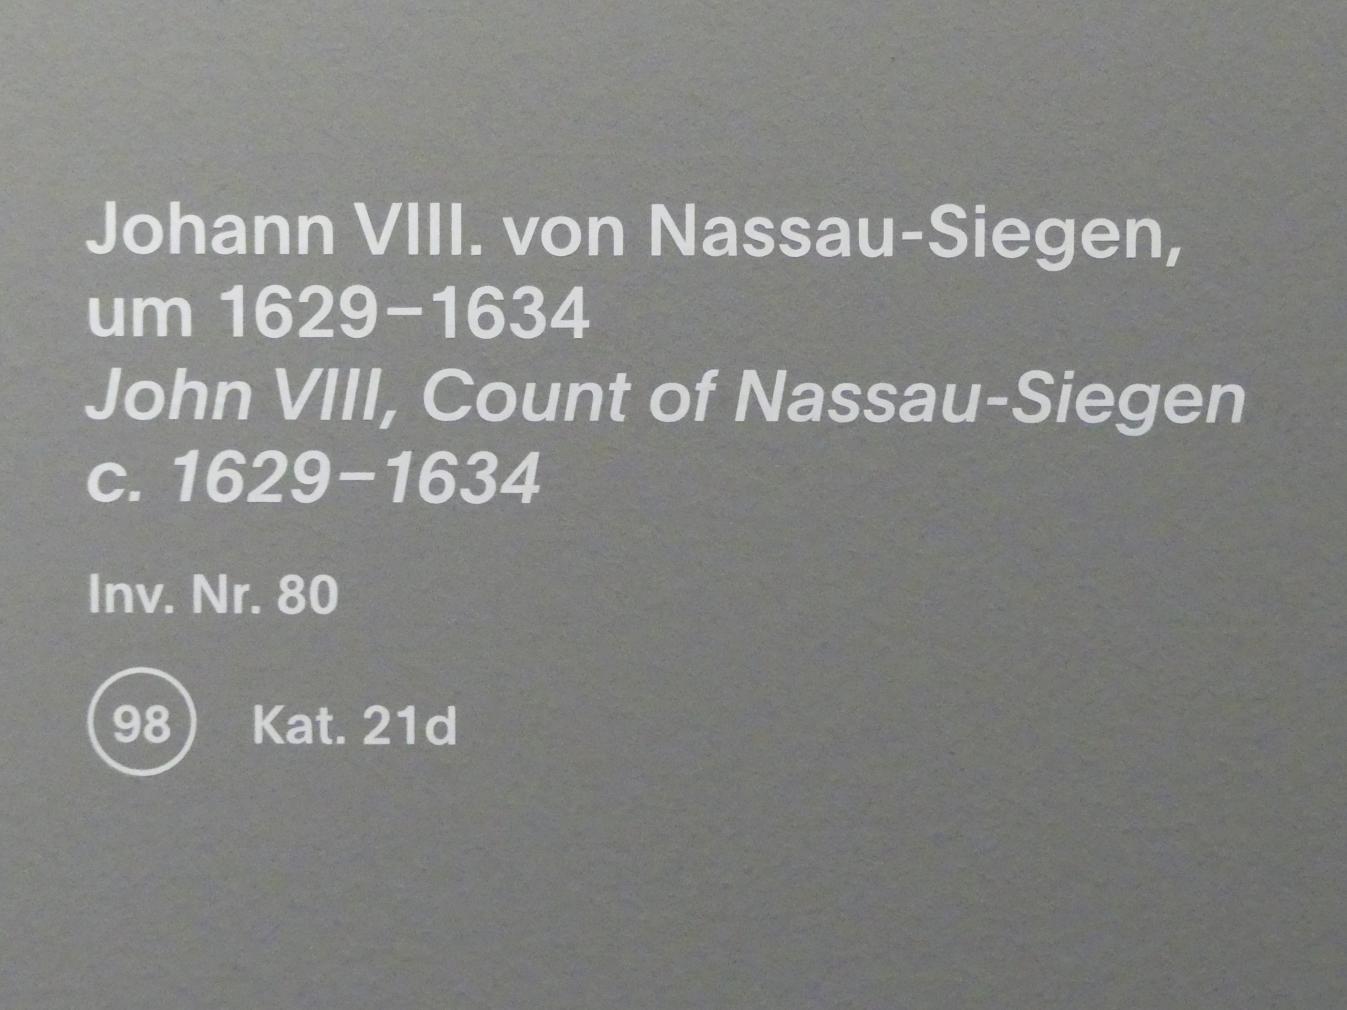 Anthonis (Anton) van Dyck (Werkstatt) (1619–1636), Johann VIII. von Nassau-Siegen, München, Alte Pinakothek, Ausstellung "Van Dyck" vom 25.10.2019-02.02.2020, Die "Ikonographie" - 2, um 1629–1634, Bild 2/2